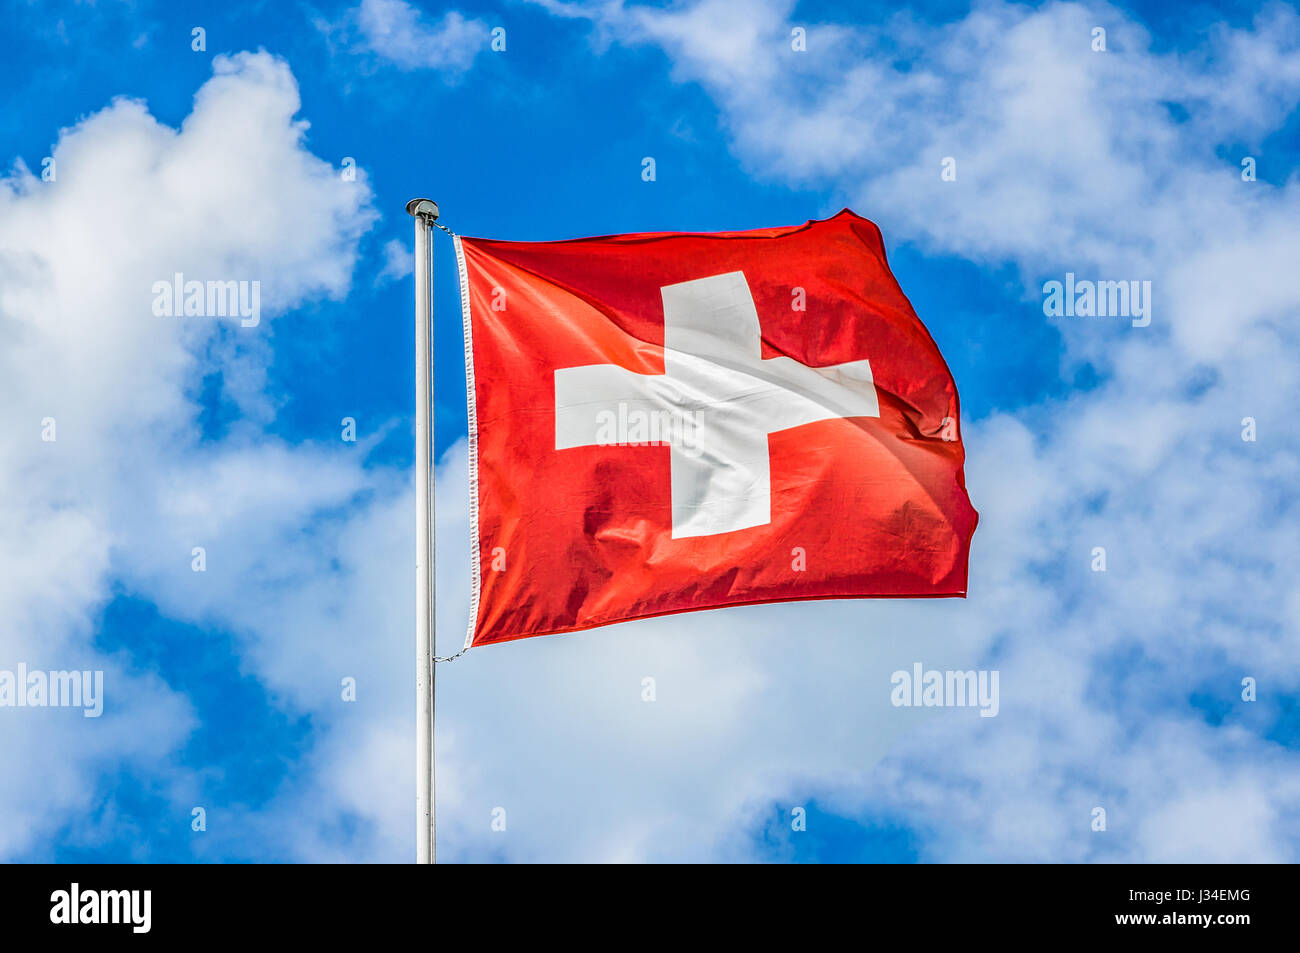 L'affichage classique du drapeau national de la Suisse s'agitant dans le vent sur fond de ciel bleu et nuages lors d'une journée ensoleillée en été Banque D'Images